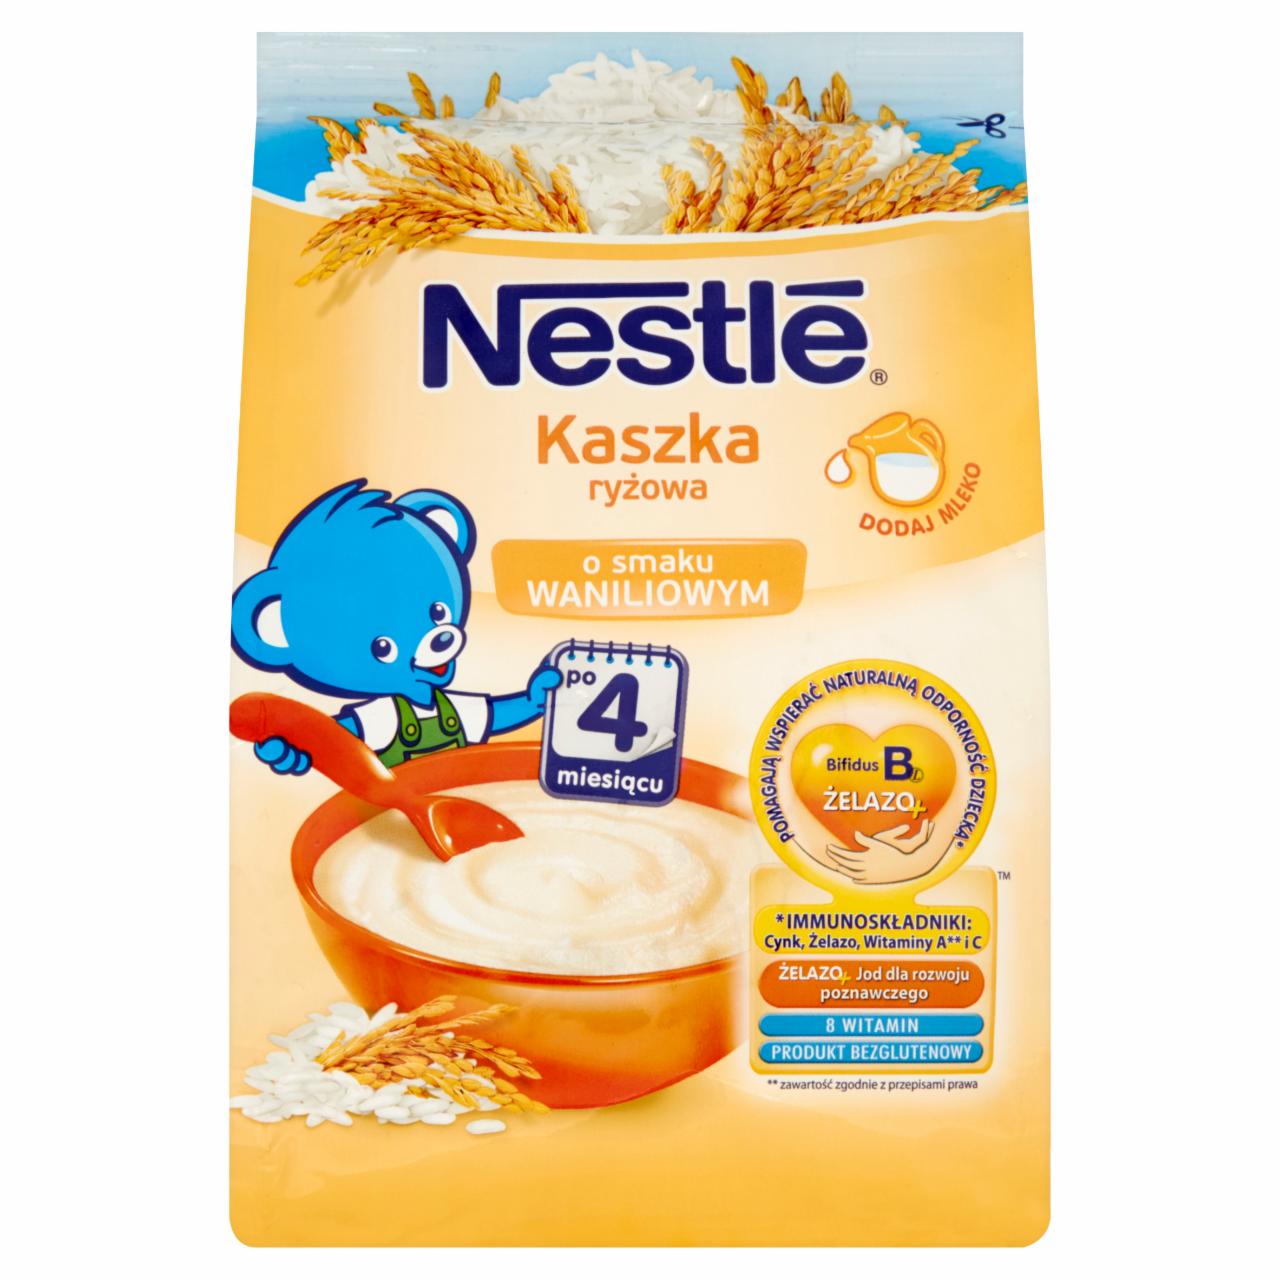 Zdjęcia - Nestlé Kaszka ryżowa bezmleczna wanilia dla niemowląt po 4. miesiącu 180 g